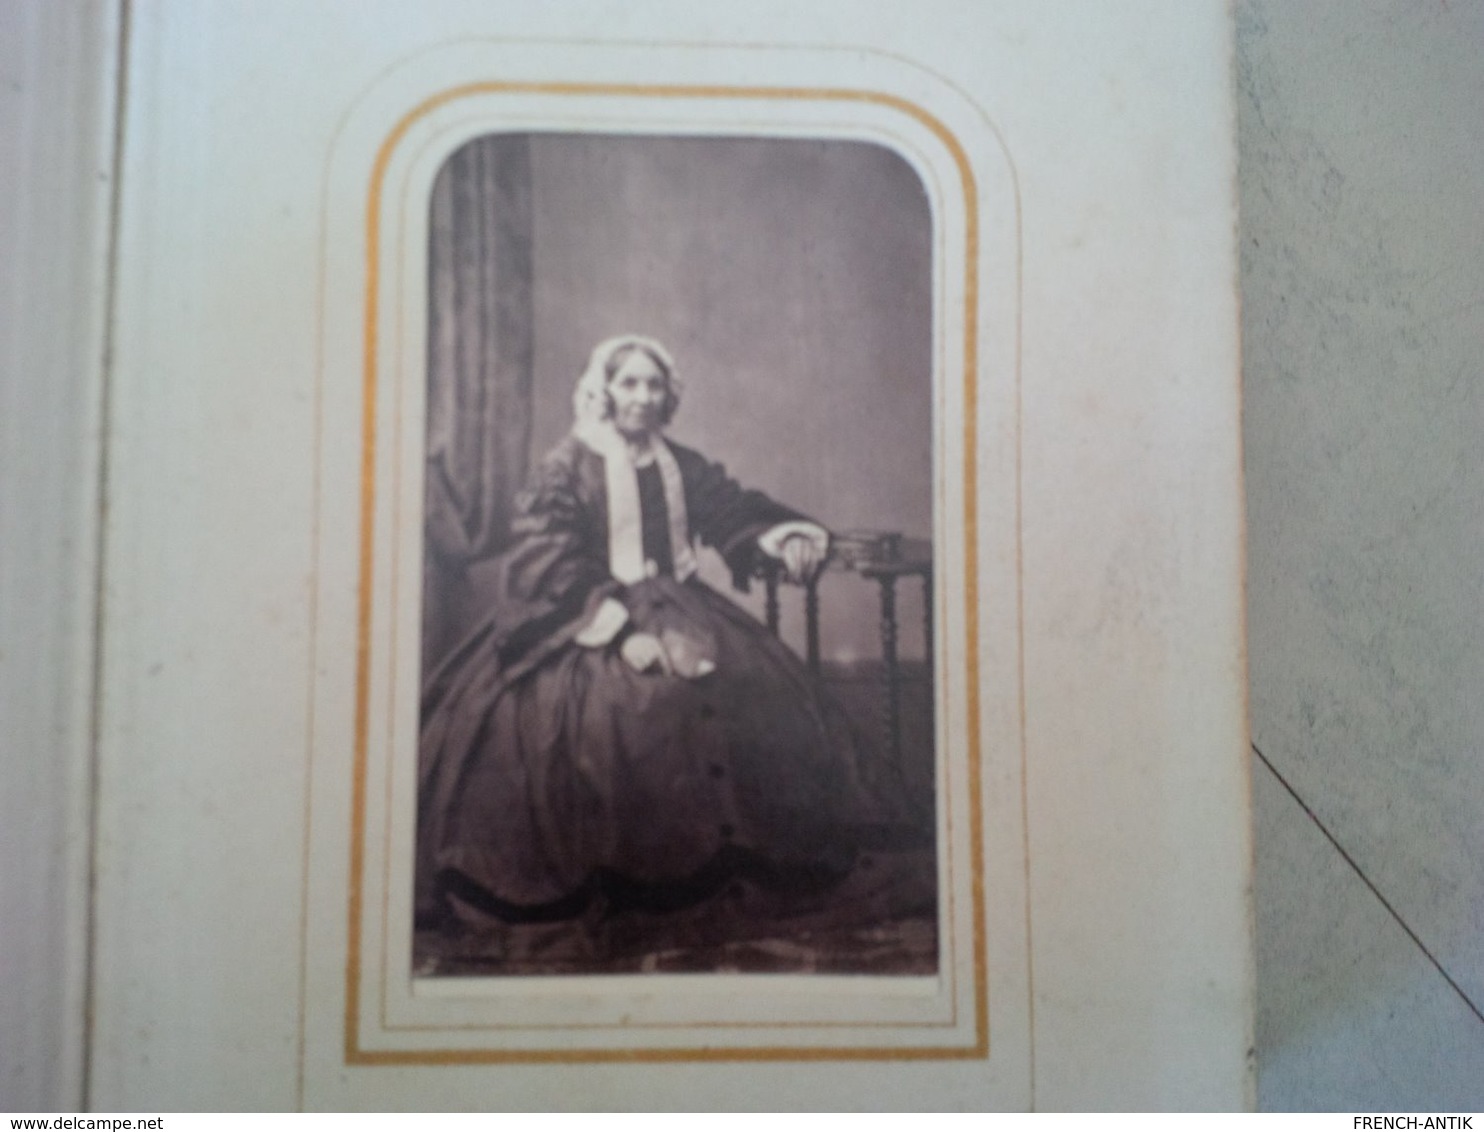 ALBUM PHOTO CDV ROYAUME UNI 1870 1880 PHOTOGRAPHE GAUBERT CILMOR THREDDERS MC LEAN AND HAES - Albumes & Colecciones